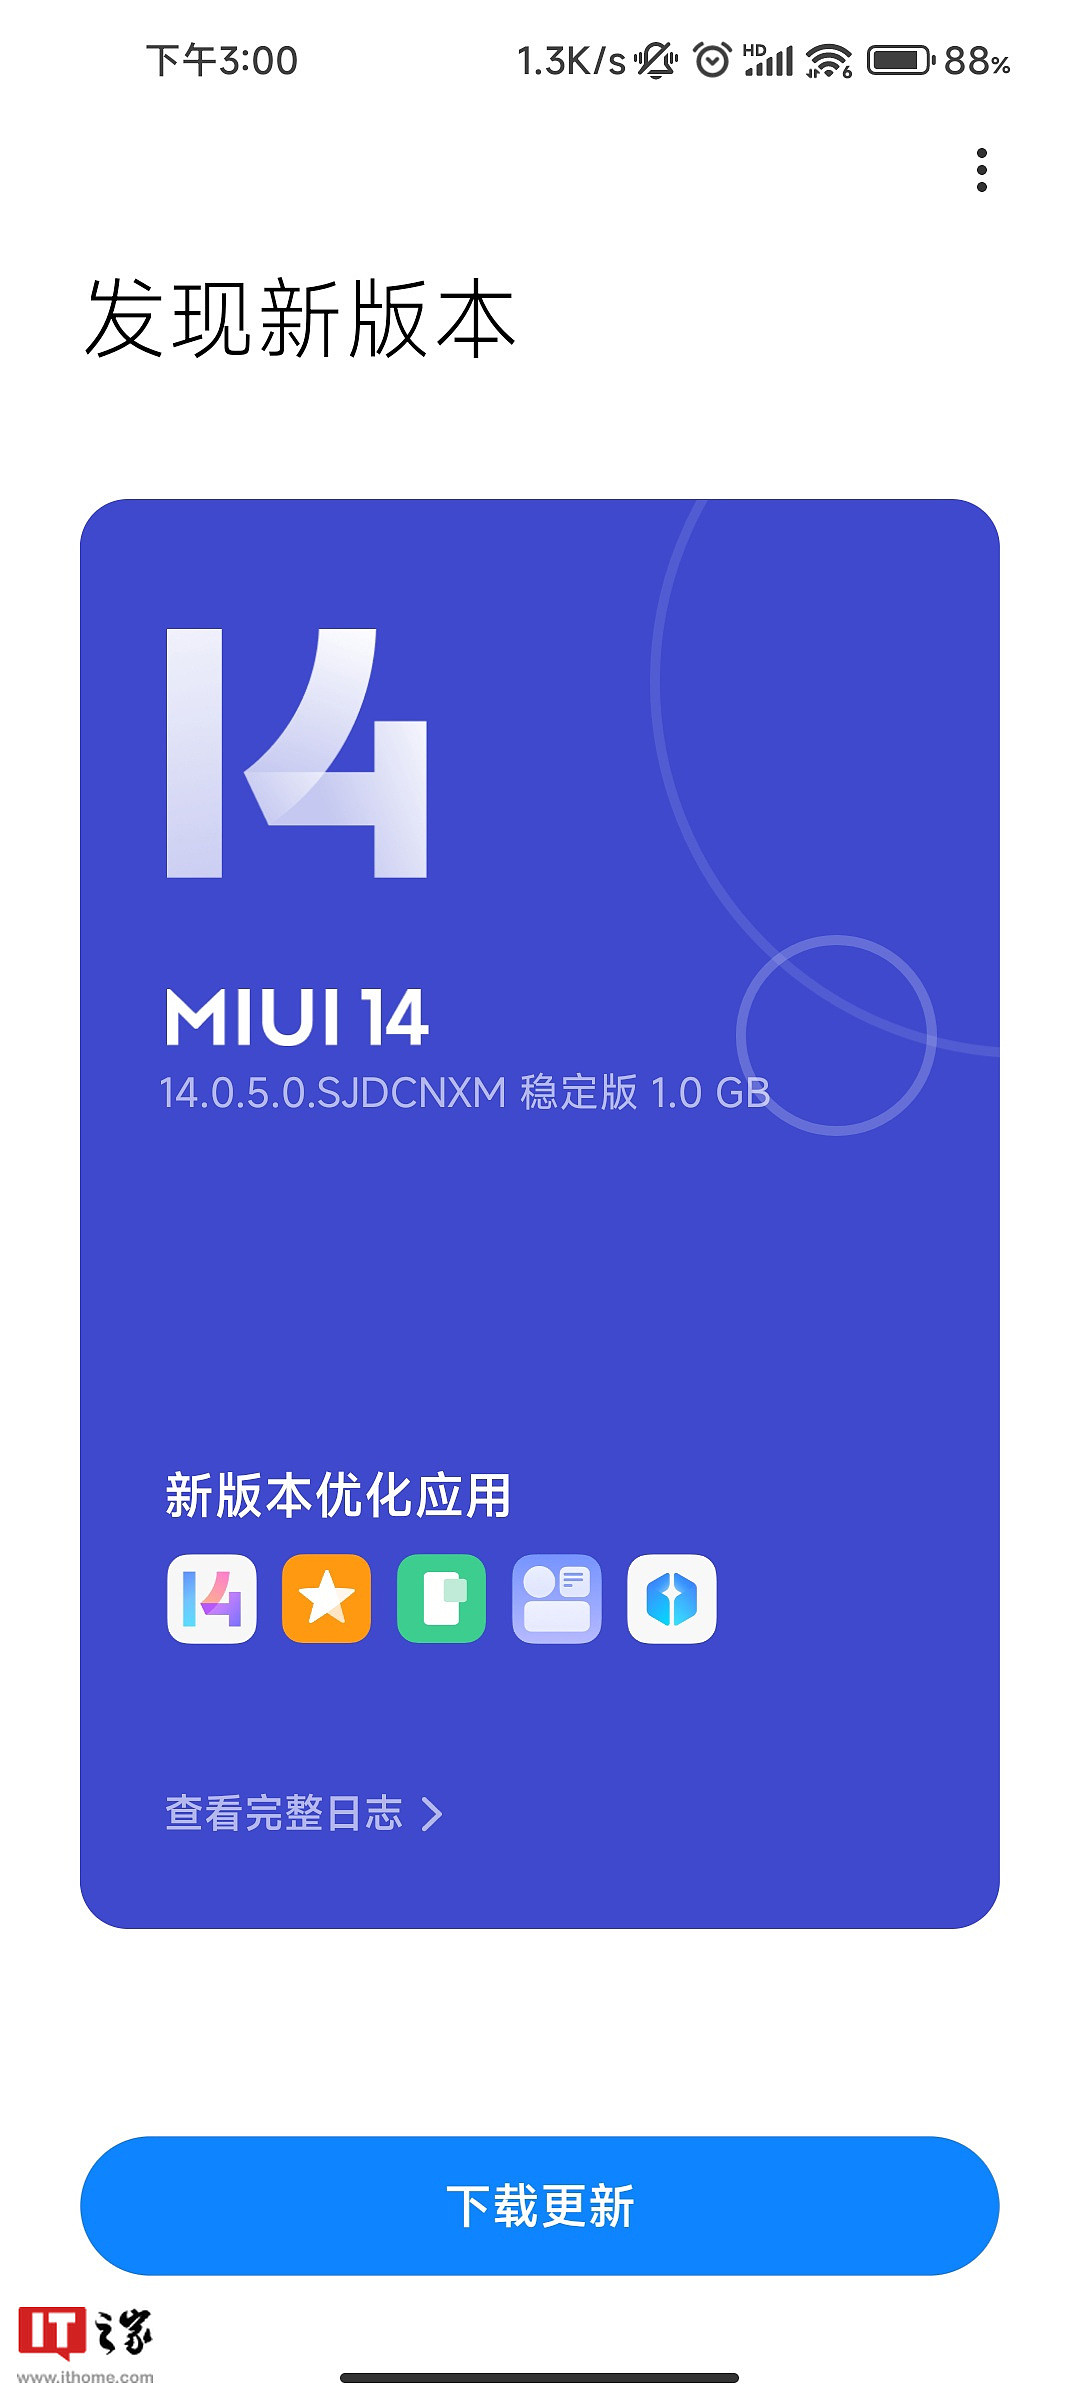 小米 Redmi K30S 至尊纪念版 / K30 Pro 手机开始推送 MIUI 14 稳定版更新 - 1